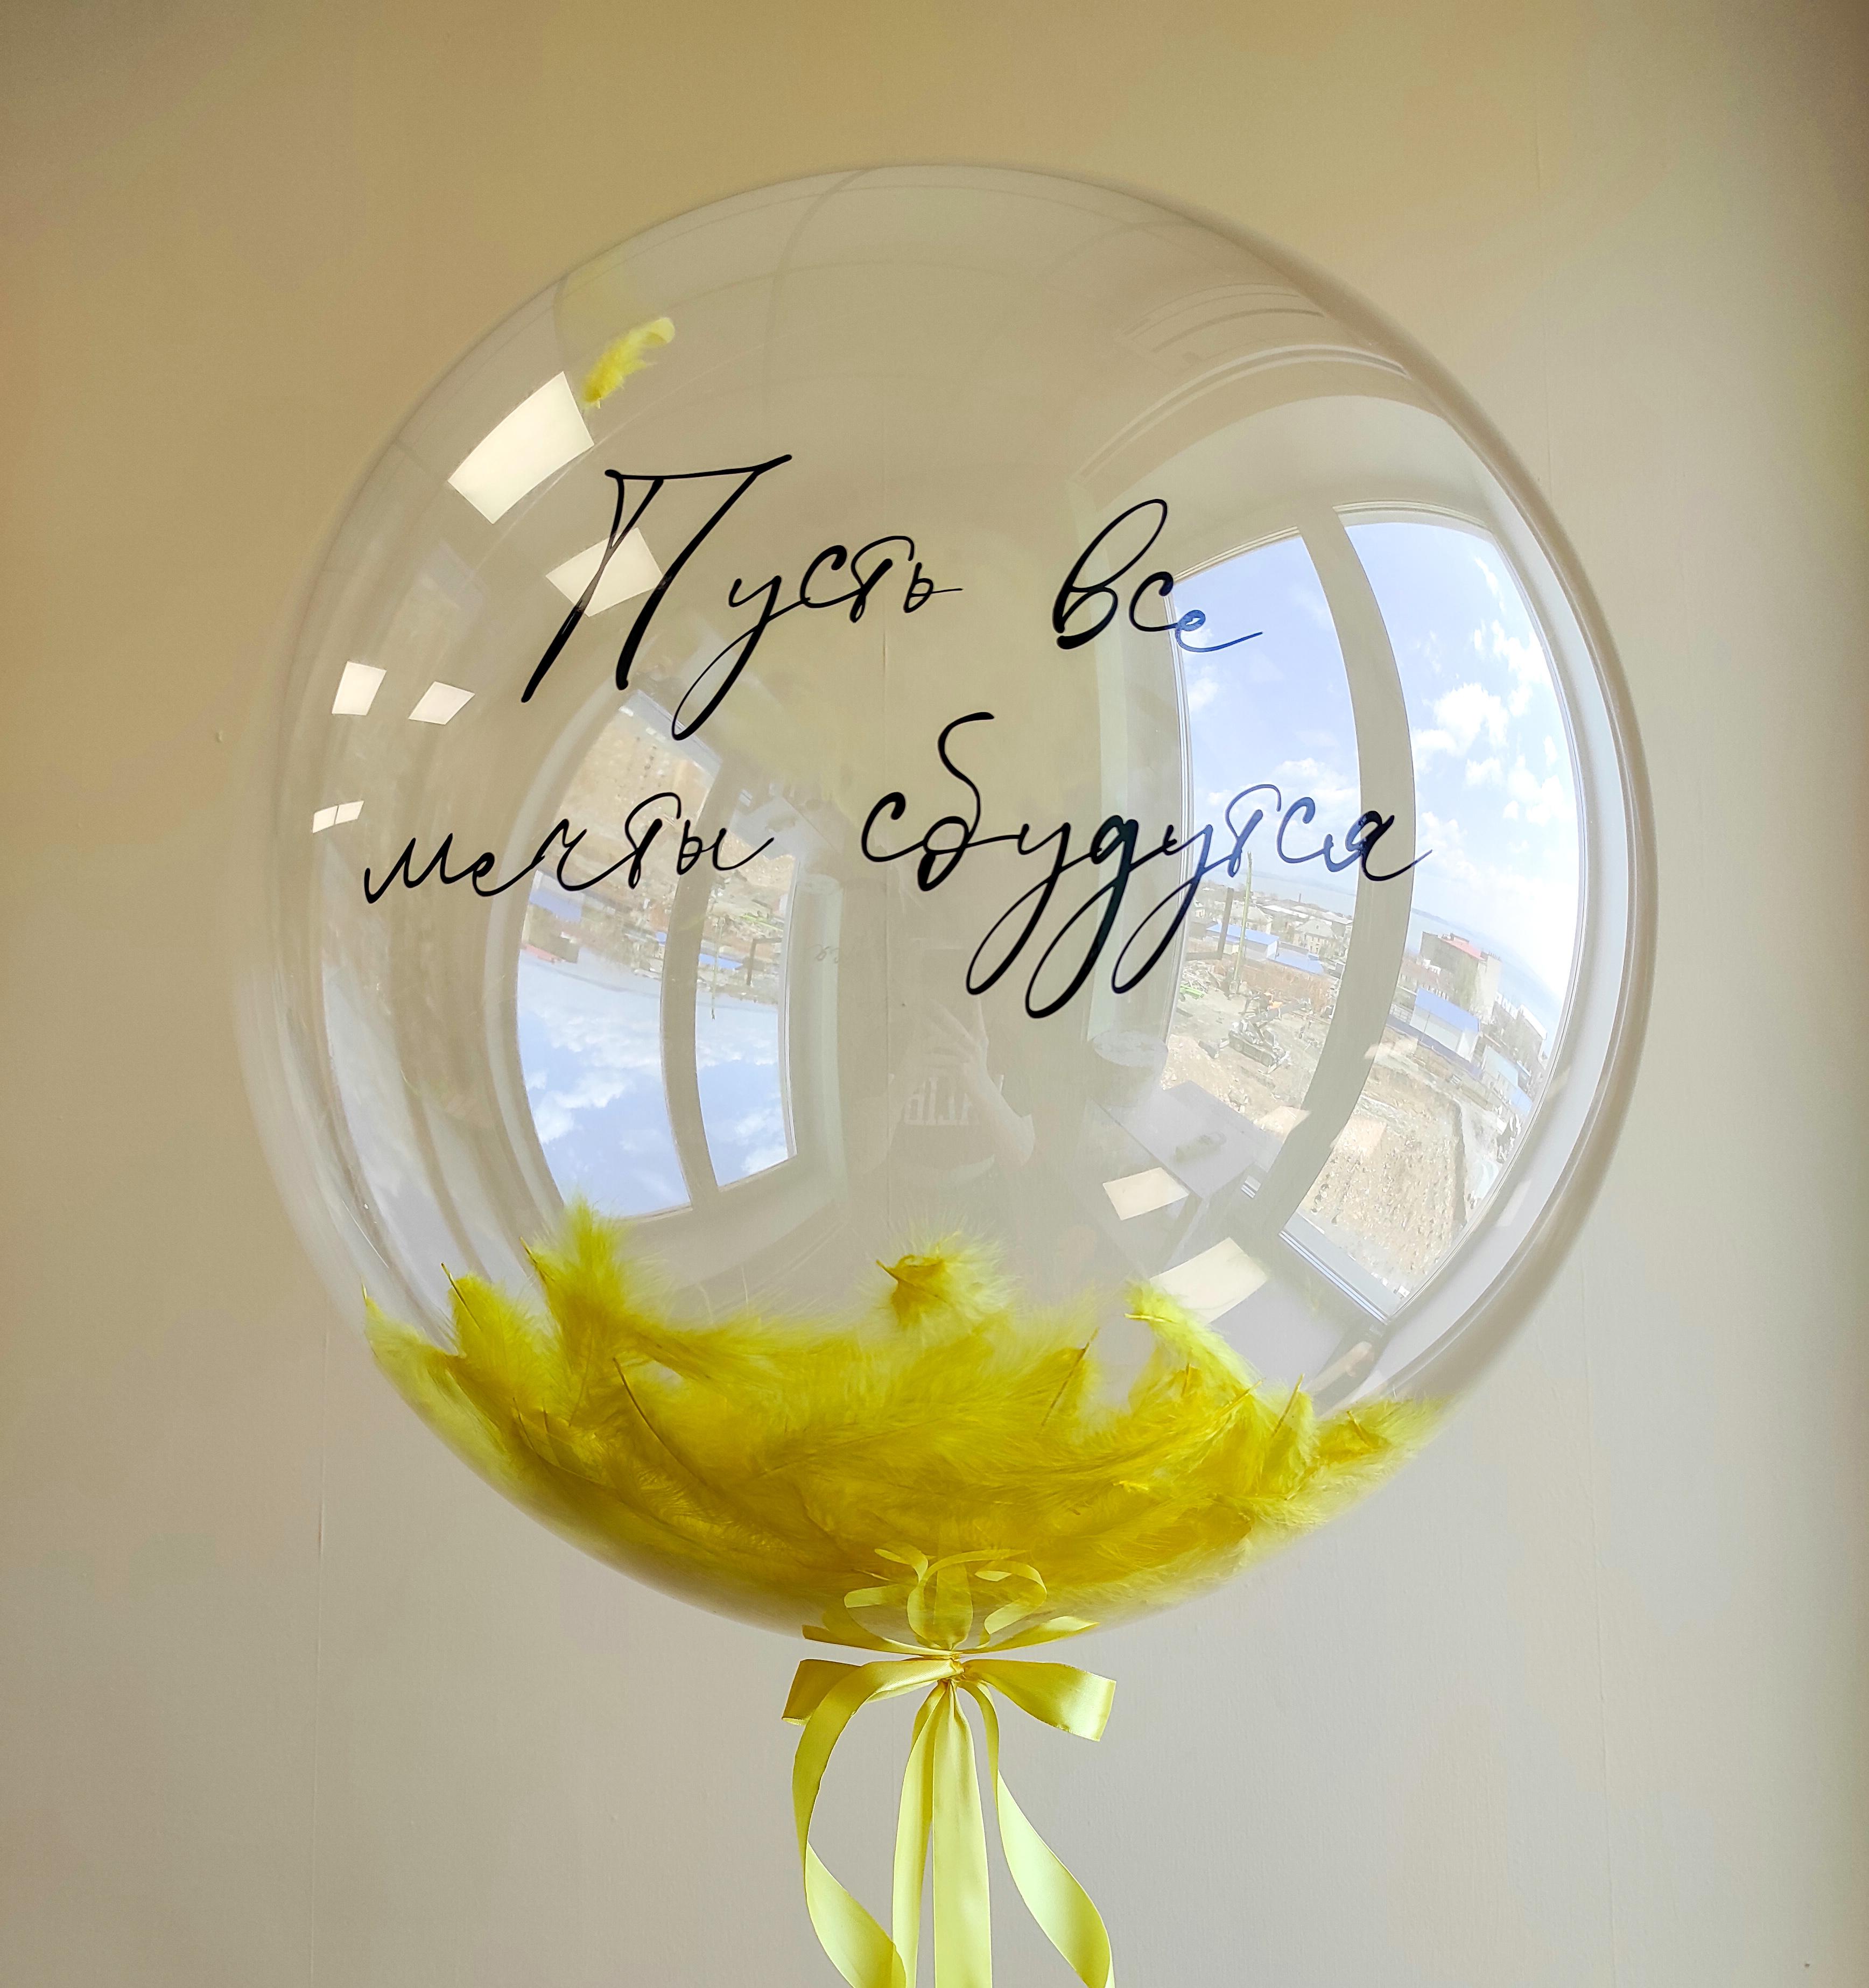 Шар Bubble 60 см - с перьями/шарами и надписью